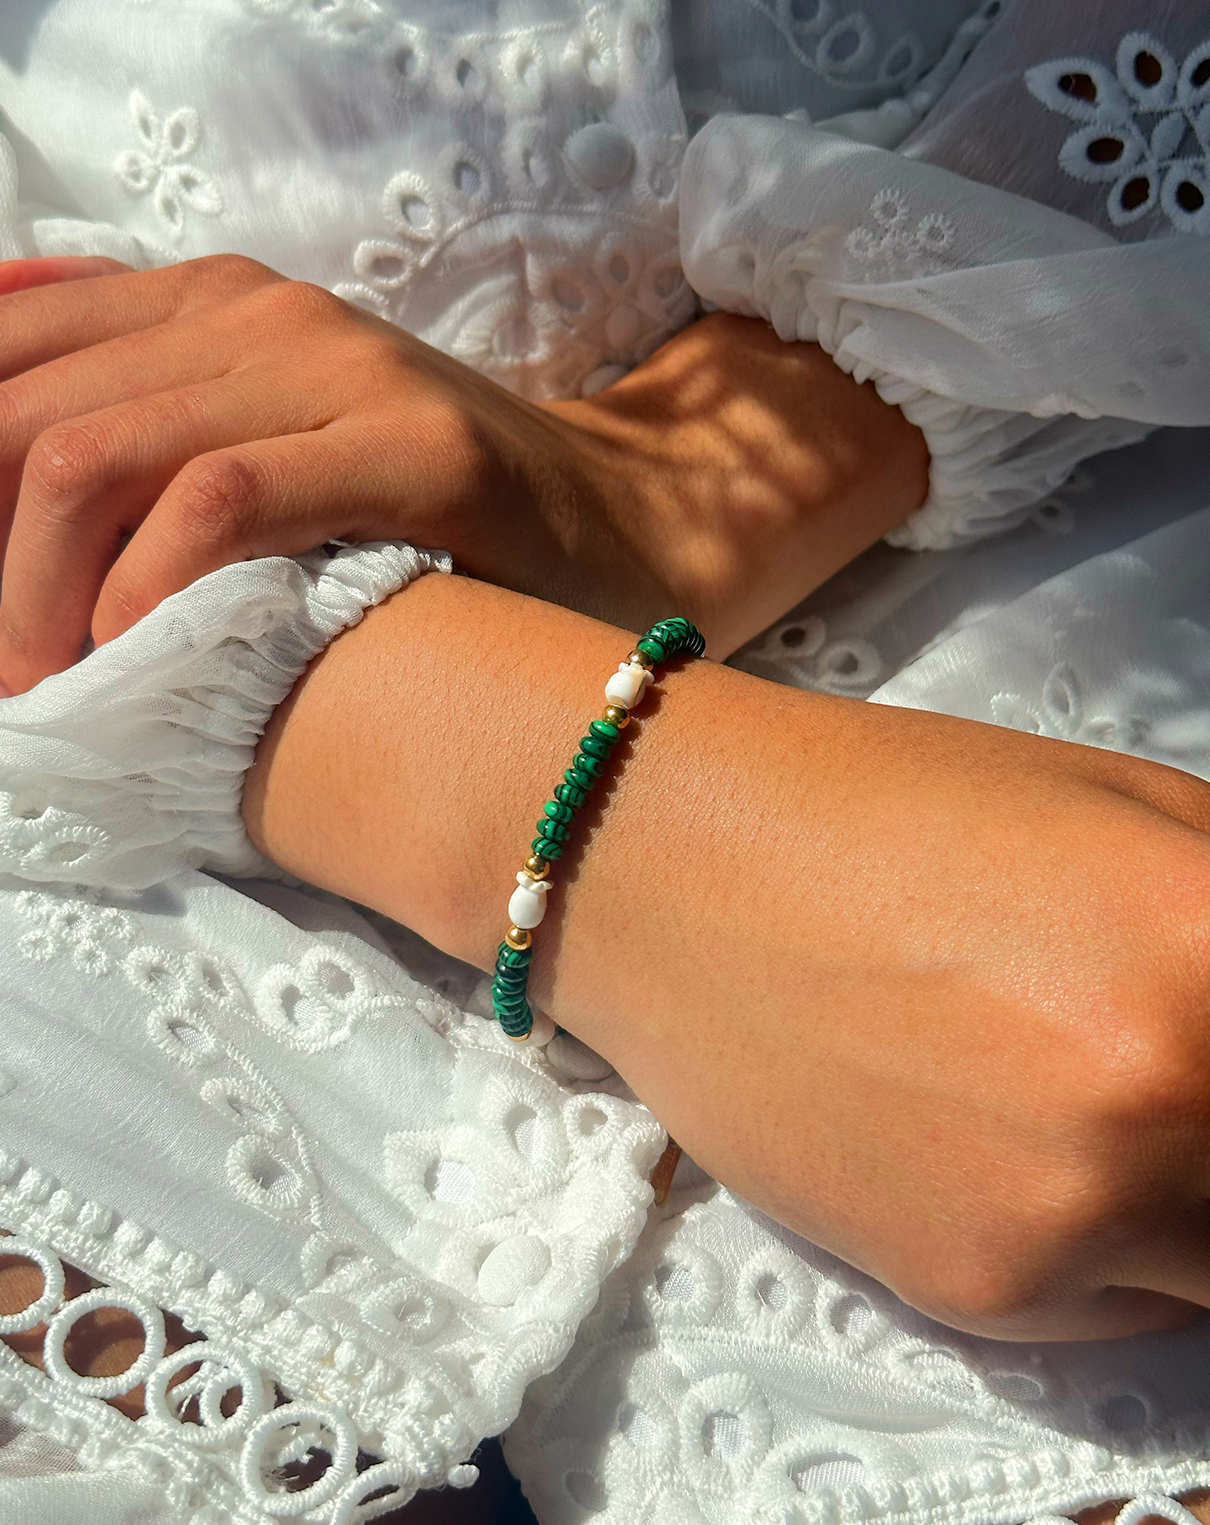 Bracelet de perles vertes, blanches et dorées autours d'un poignet